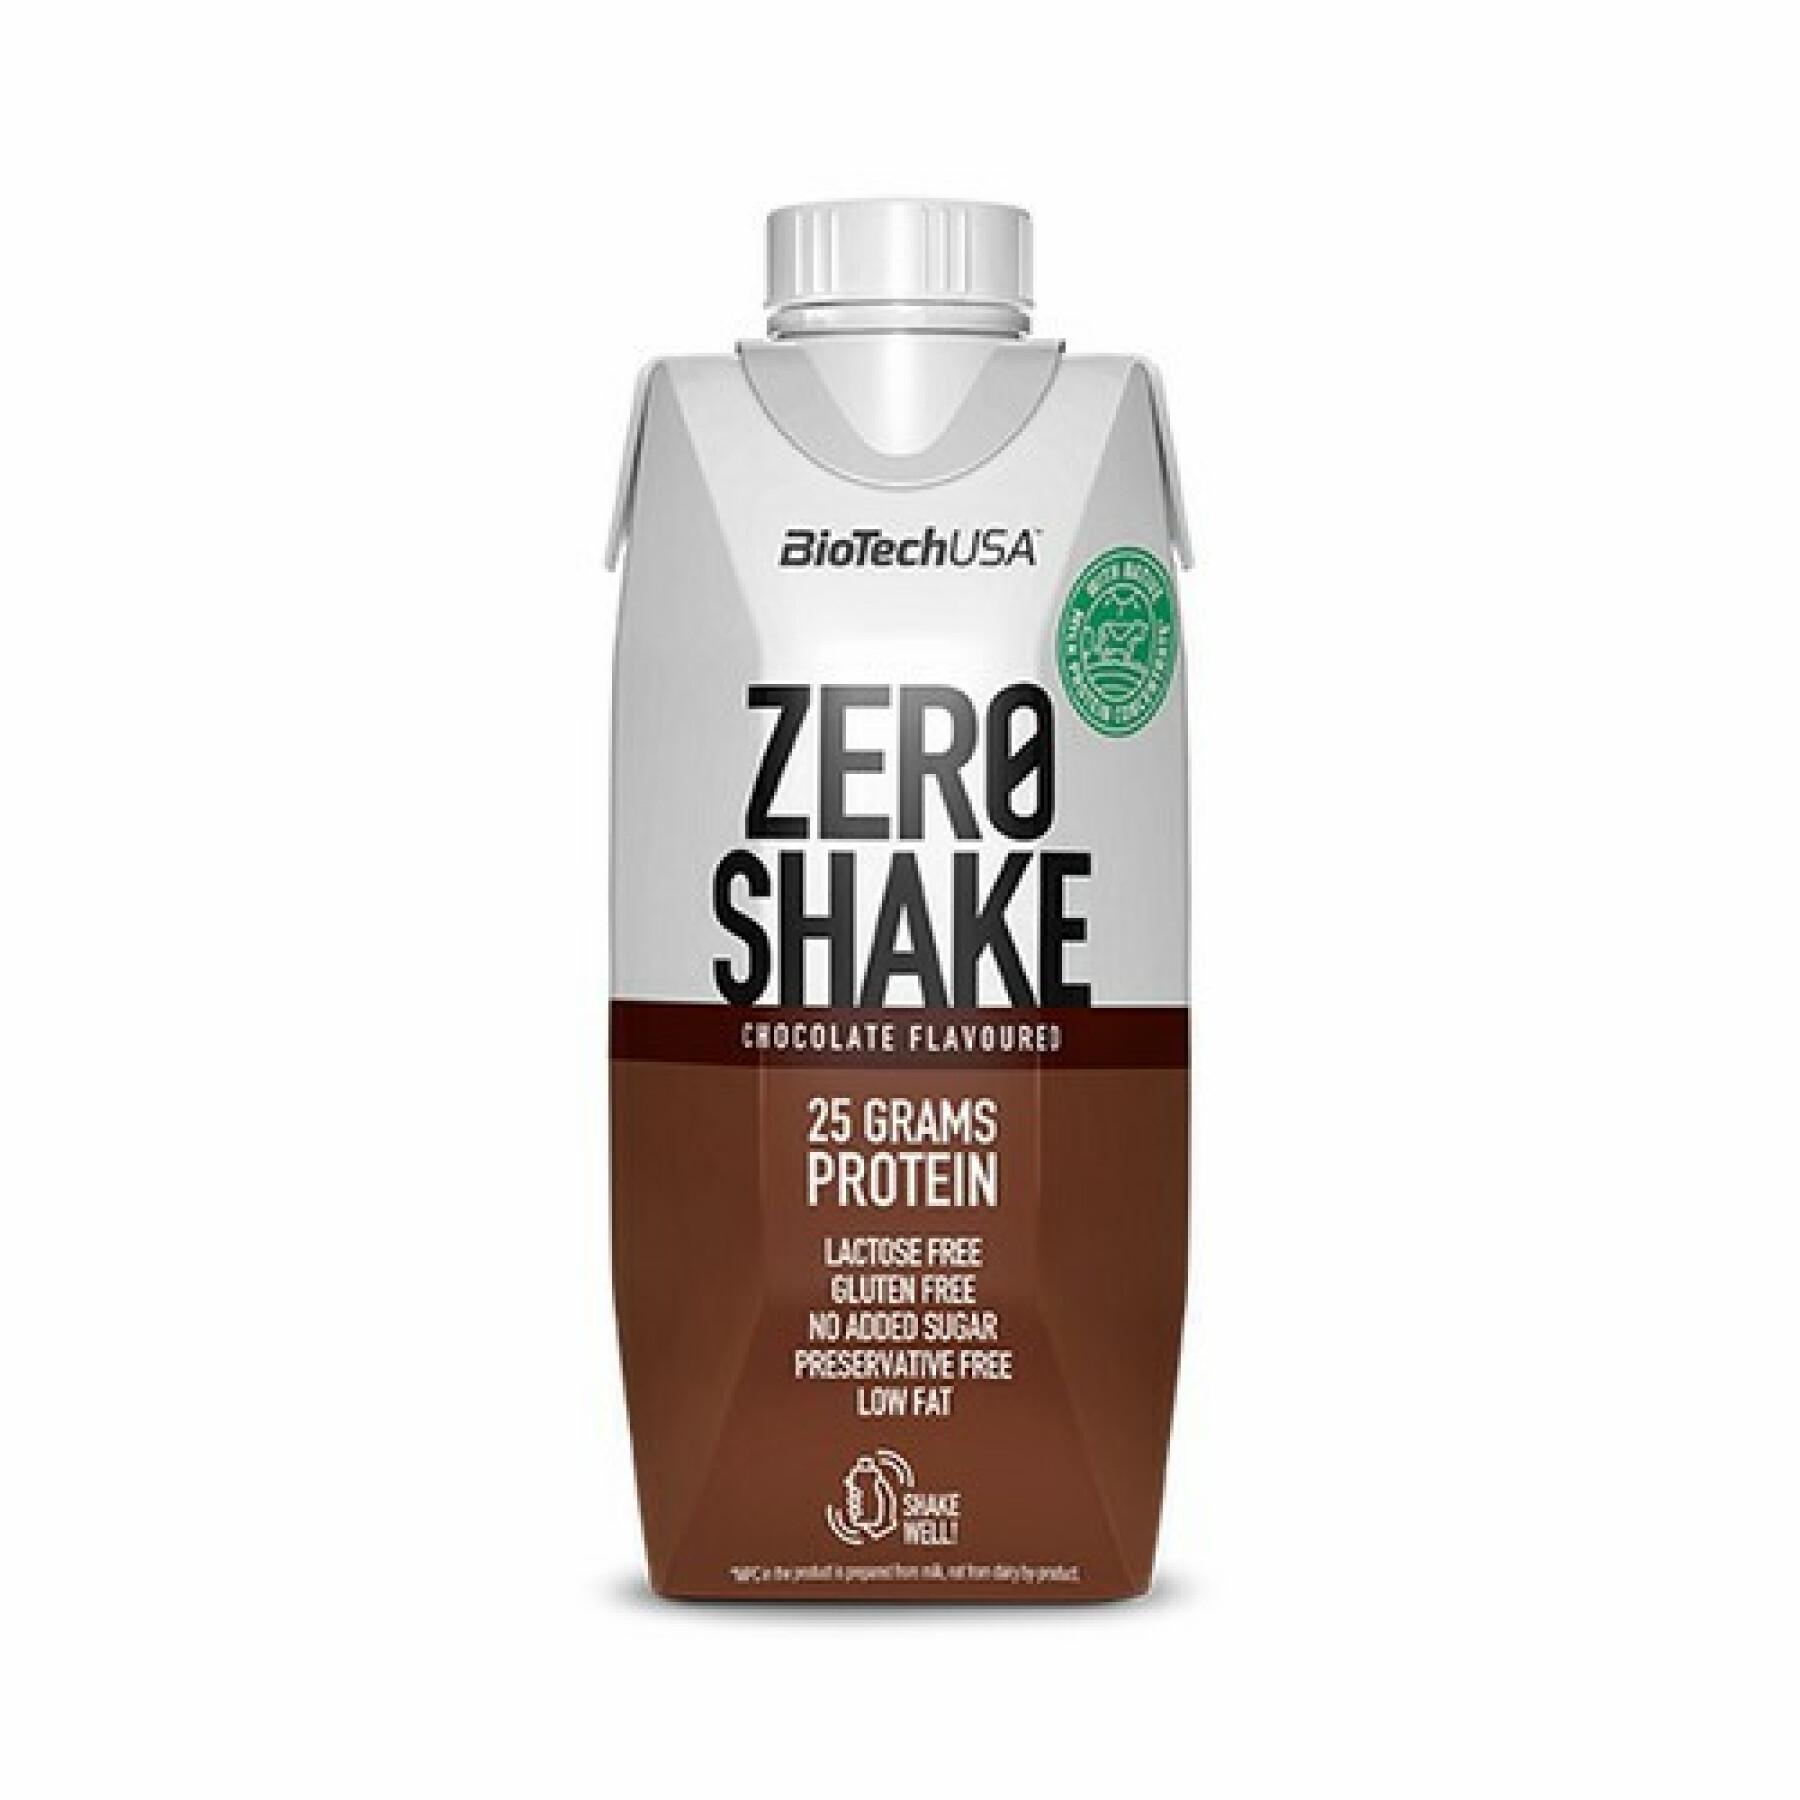 Paquete de 15 cartones de aperitivos Biotech USA zero shake - Chocolate